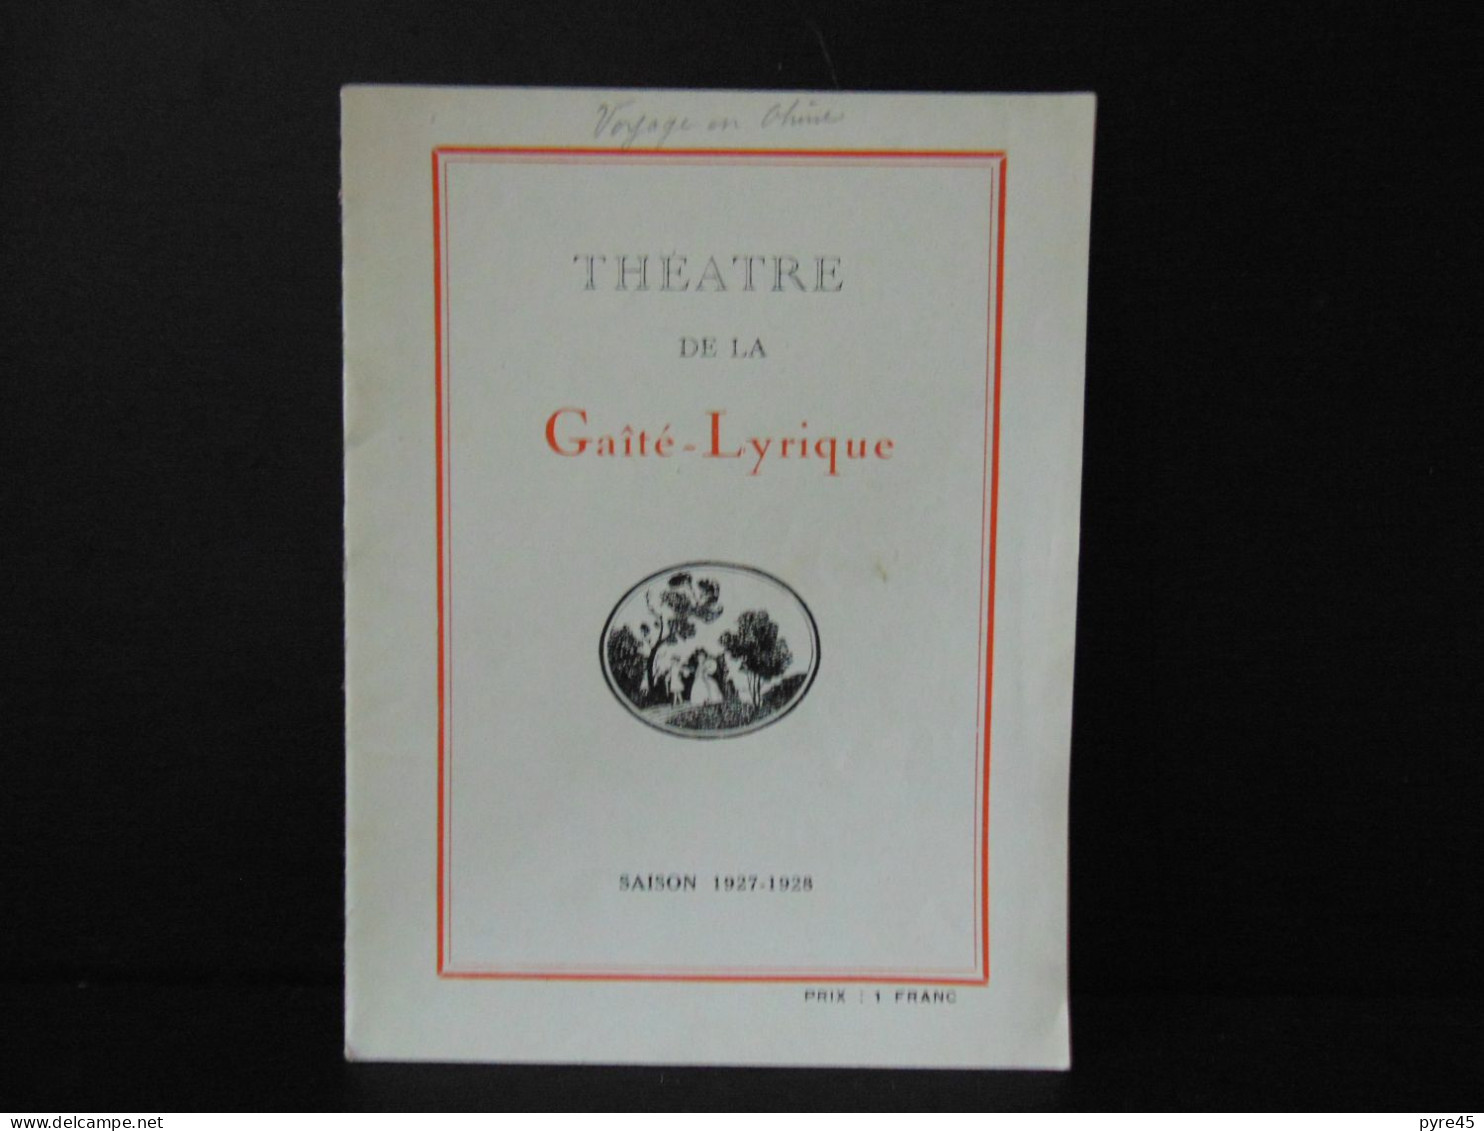 Programme Théâtre De La Gaité-Lyrique " Le Voyage En Chine " 1927/1928 - Programmes